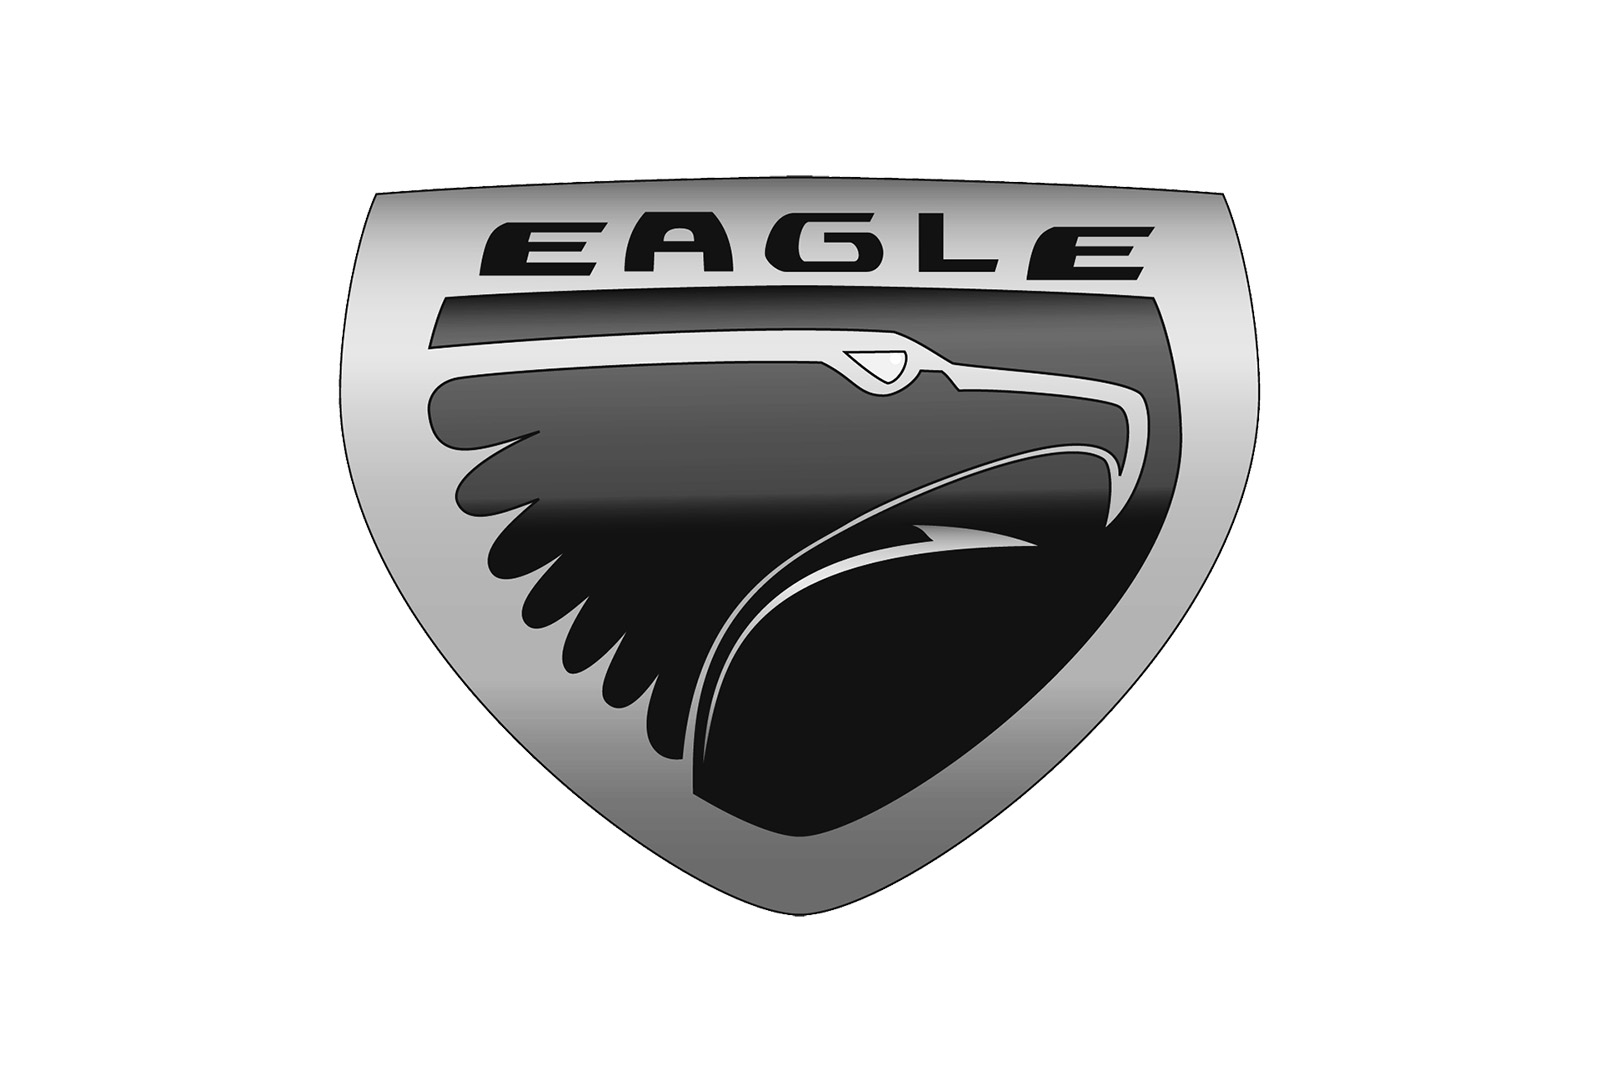 Eagle bird car logo